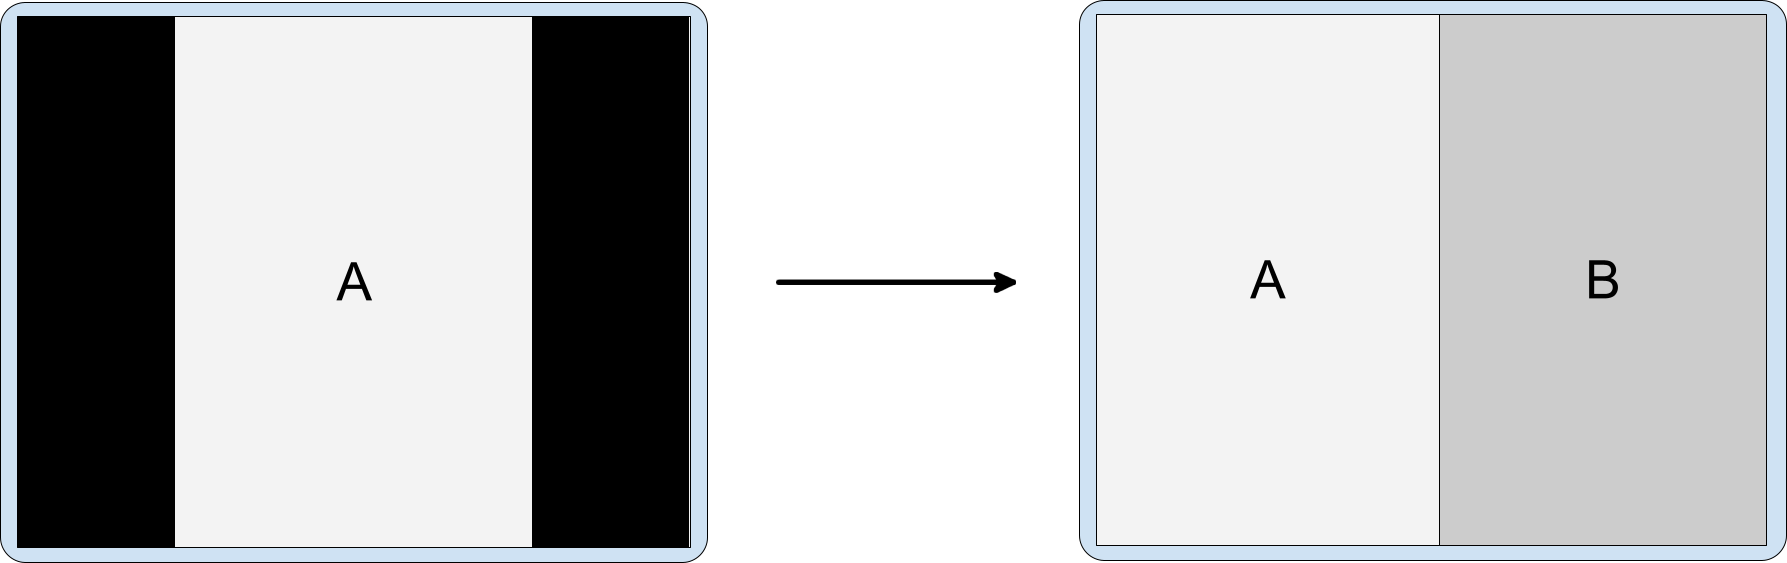 在横向显示屏上对仅限纵向模式的应用使用 activity 嵌入。仅支持纵向显示且采用信箱模式的 activity A 启动嵌入的 activity B。